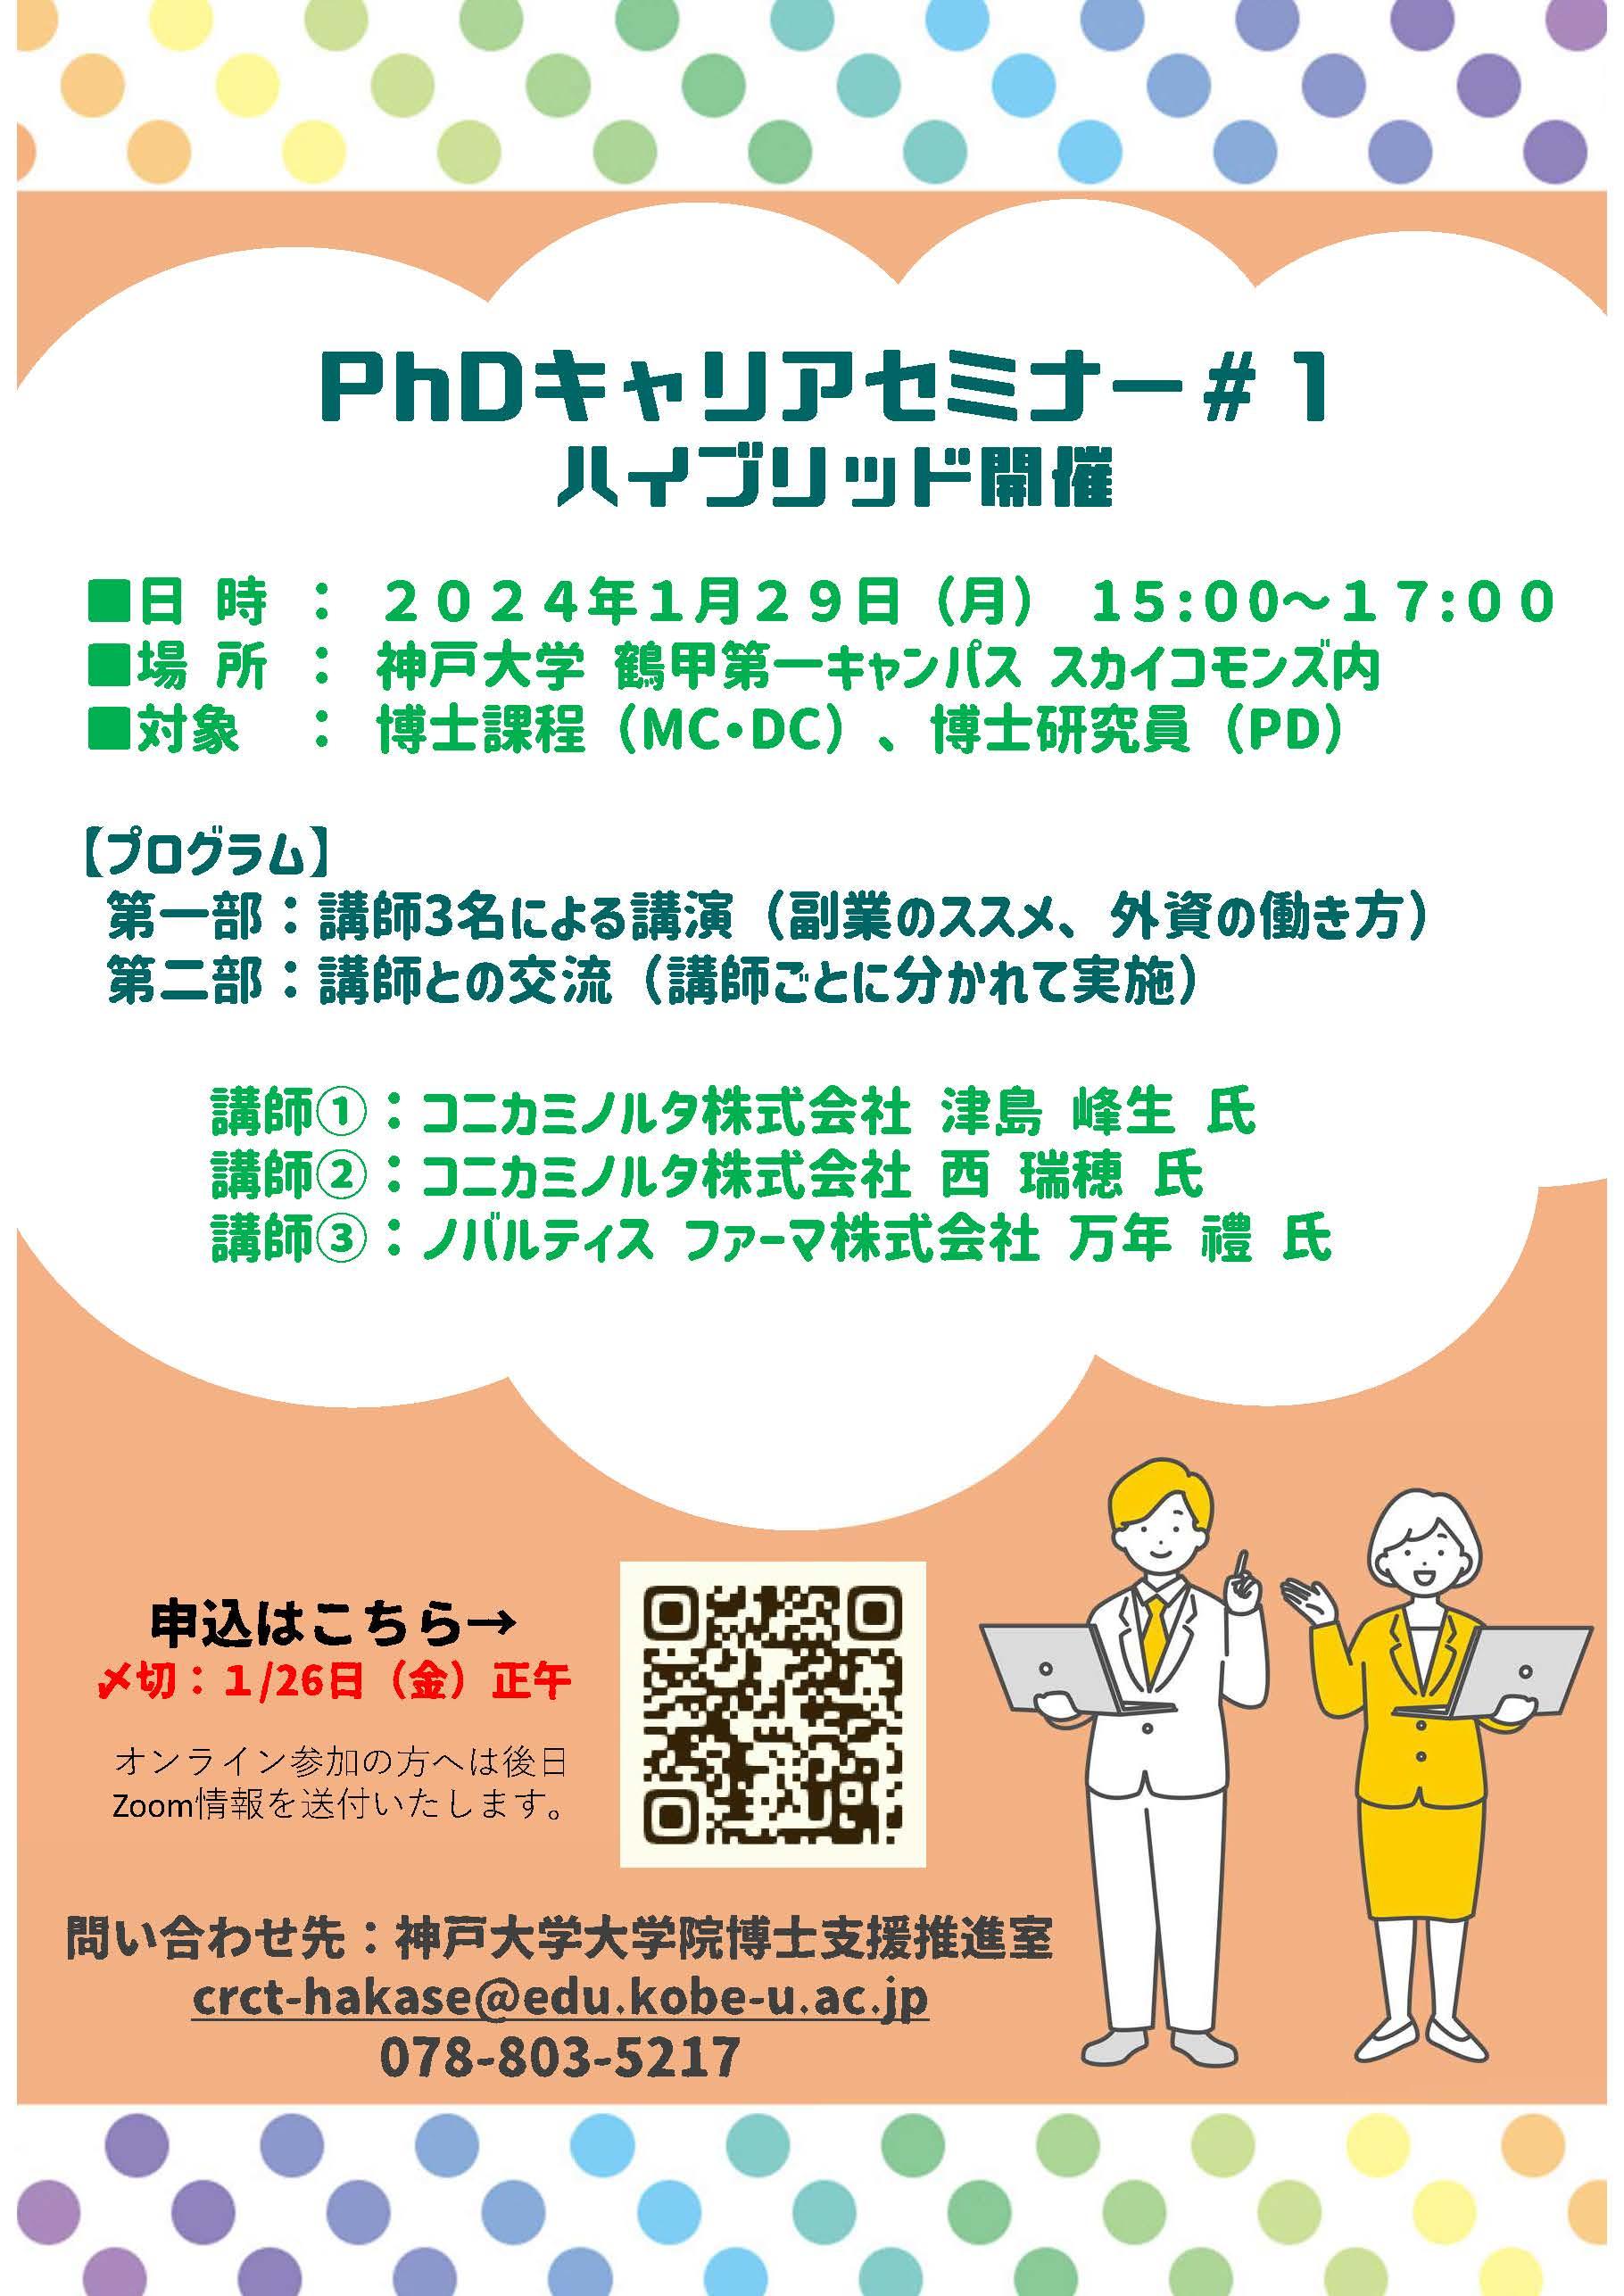 【CCDP共有プログラム】2024/1/29開催：神戸大学主催「PhDキャリアセミナー＃１」